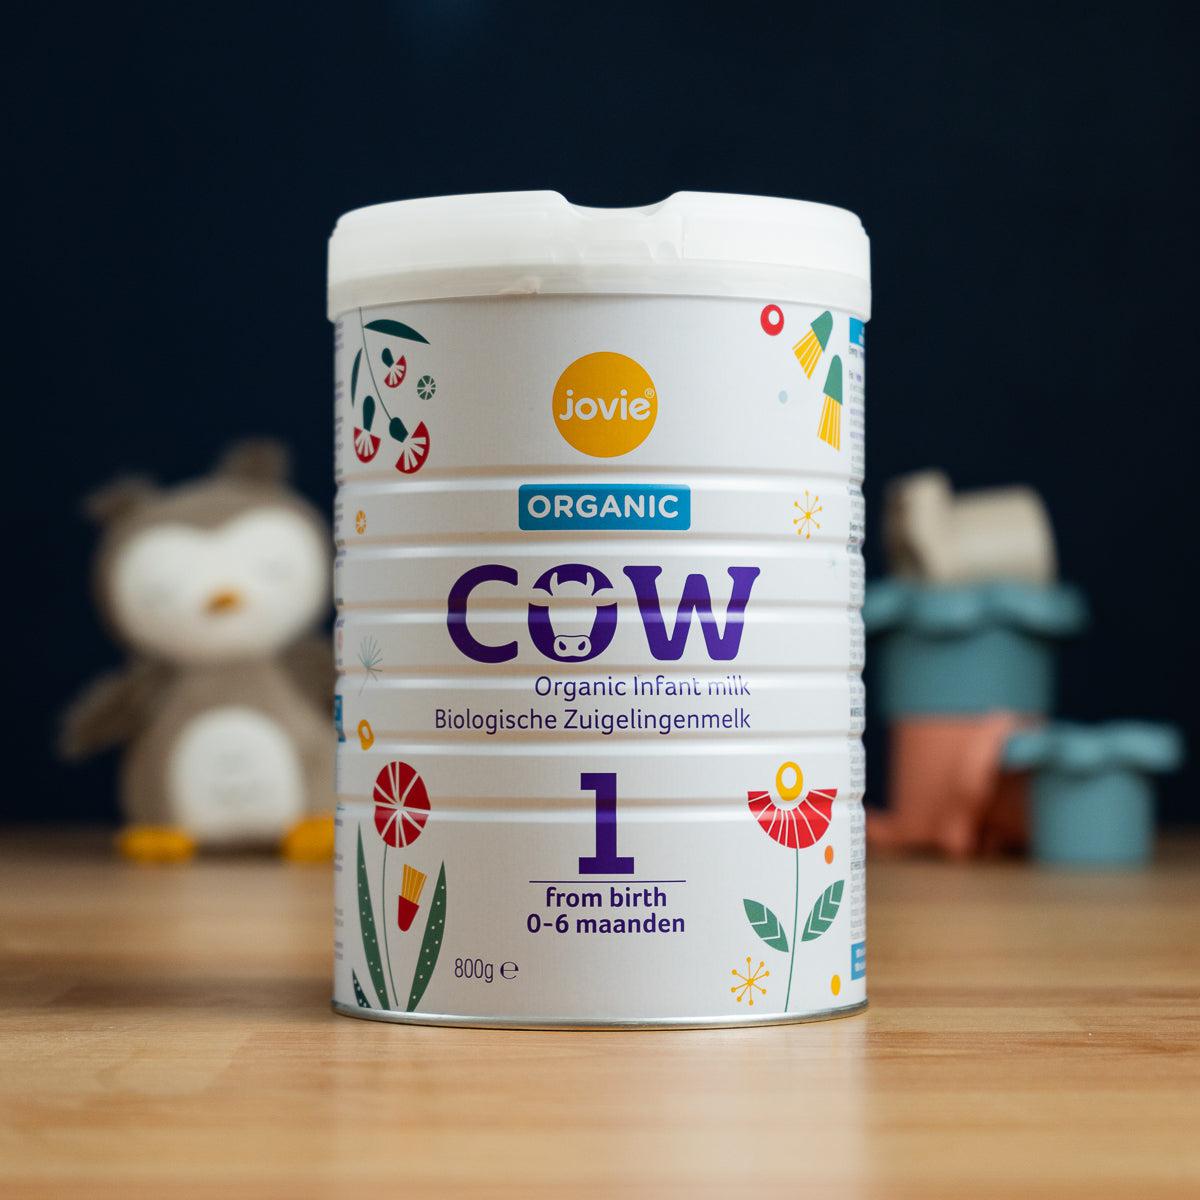 Jovie Stage 1 (0-6 Months) Organic Cow Milk Formula (800g)